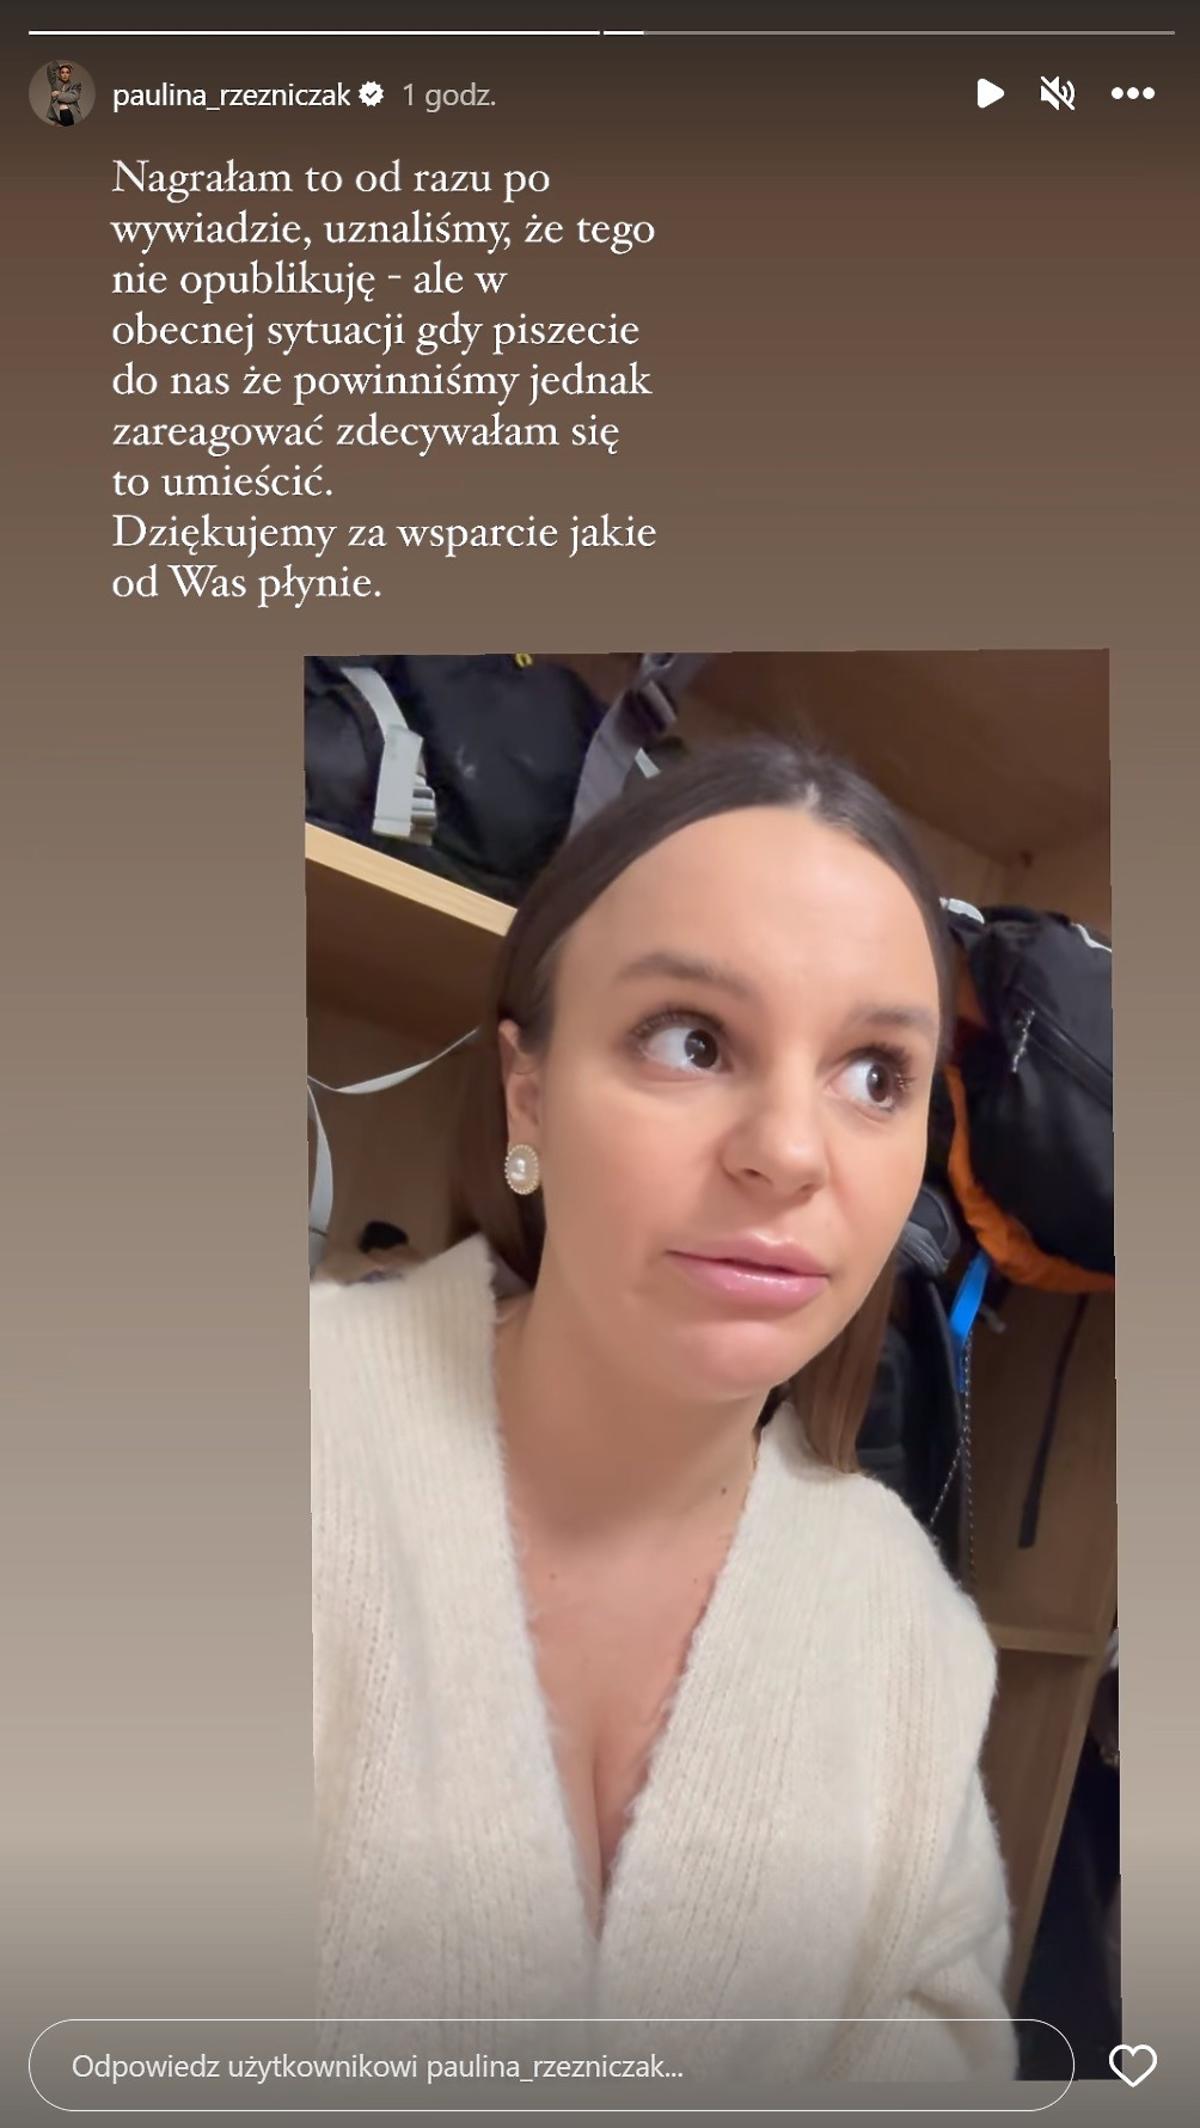 Paulina Rzeźniczak niemal płacze wpominając o wywiadzie w Dzień dobry TVN